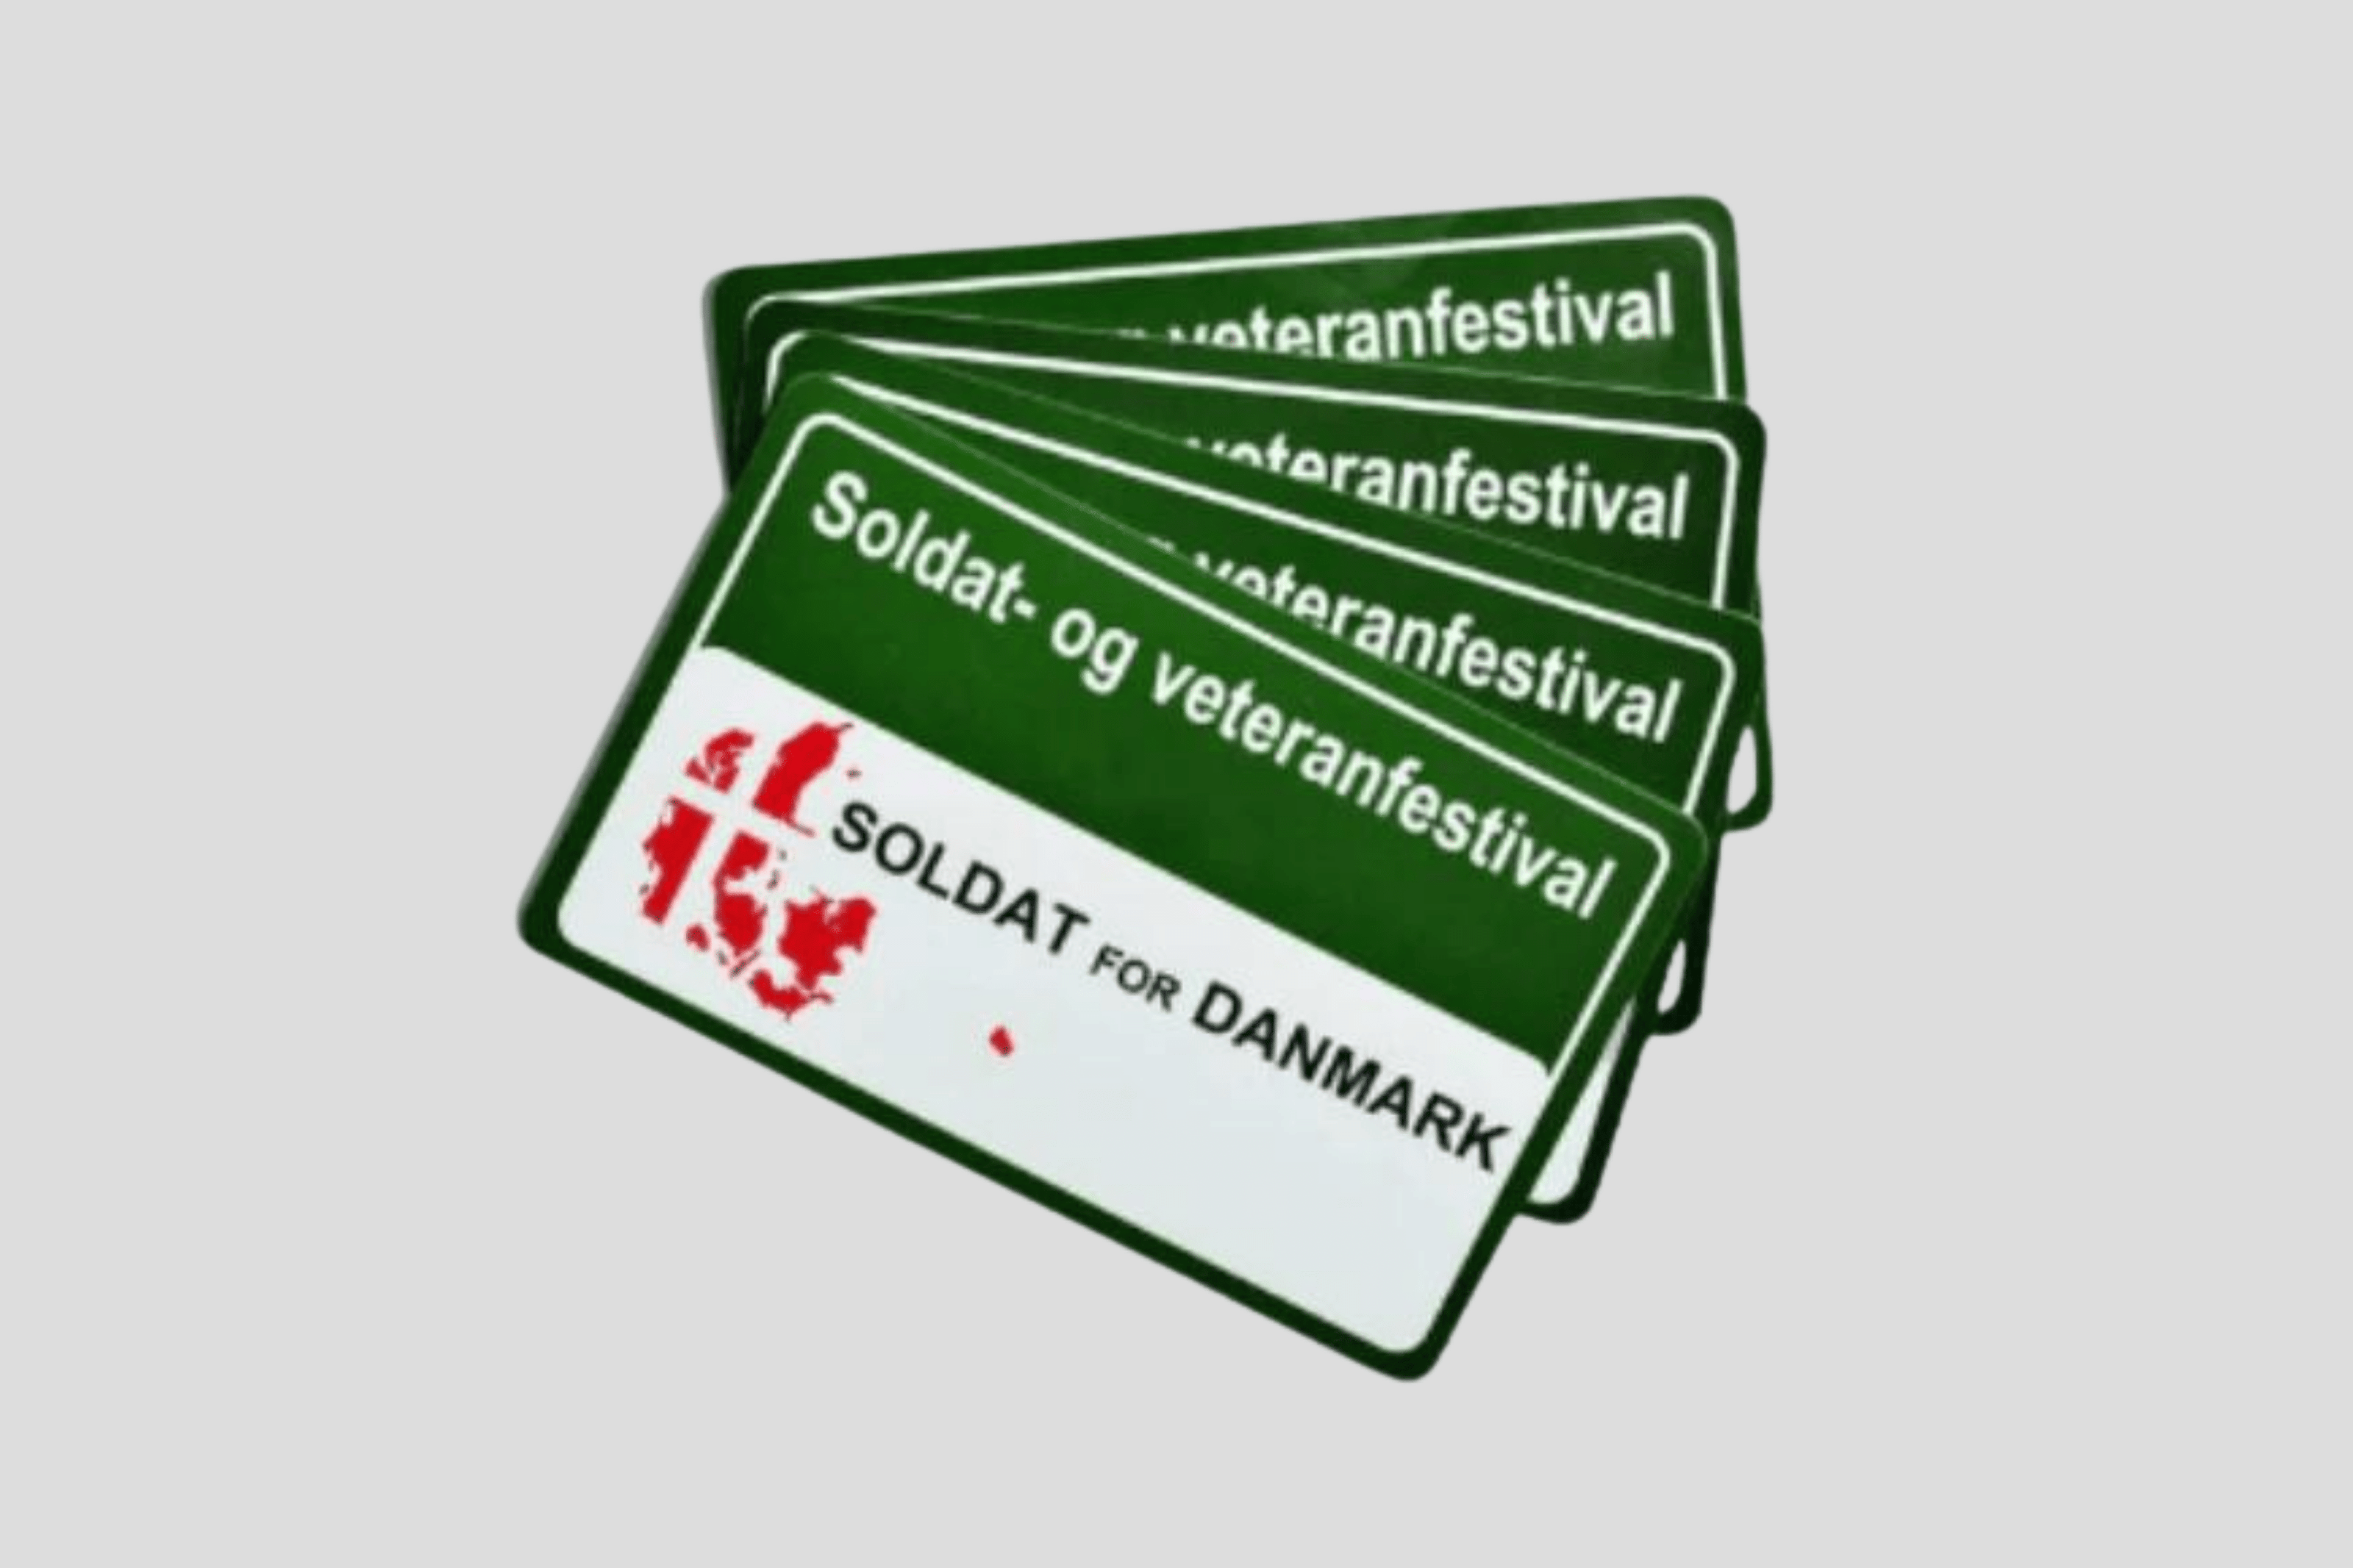 En gruppe merker med ordene 'soldatfestival' og 'danmark'.